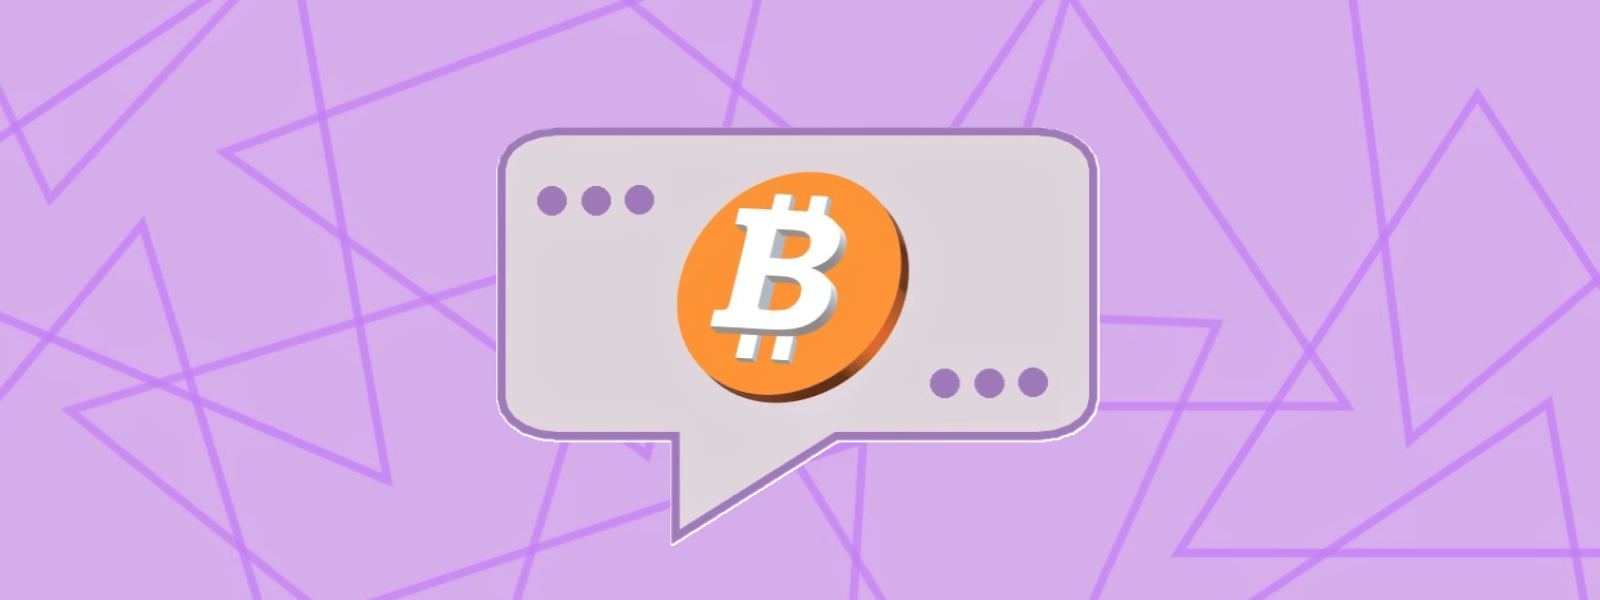 Image: Text balloon containing a bitcoin.